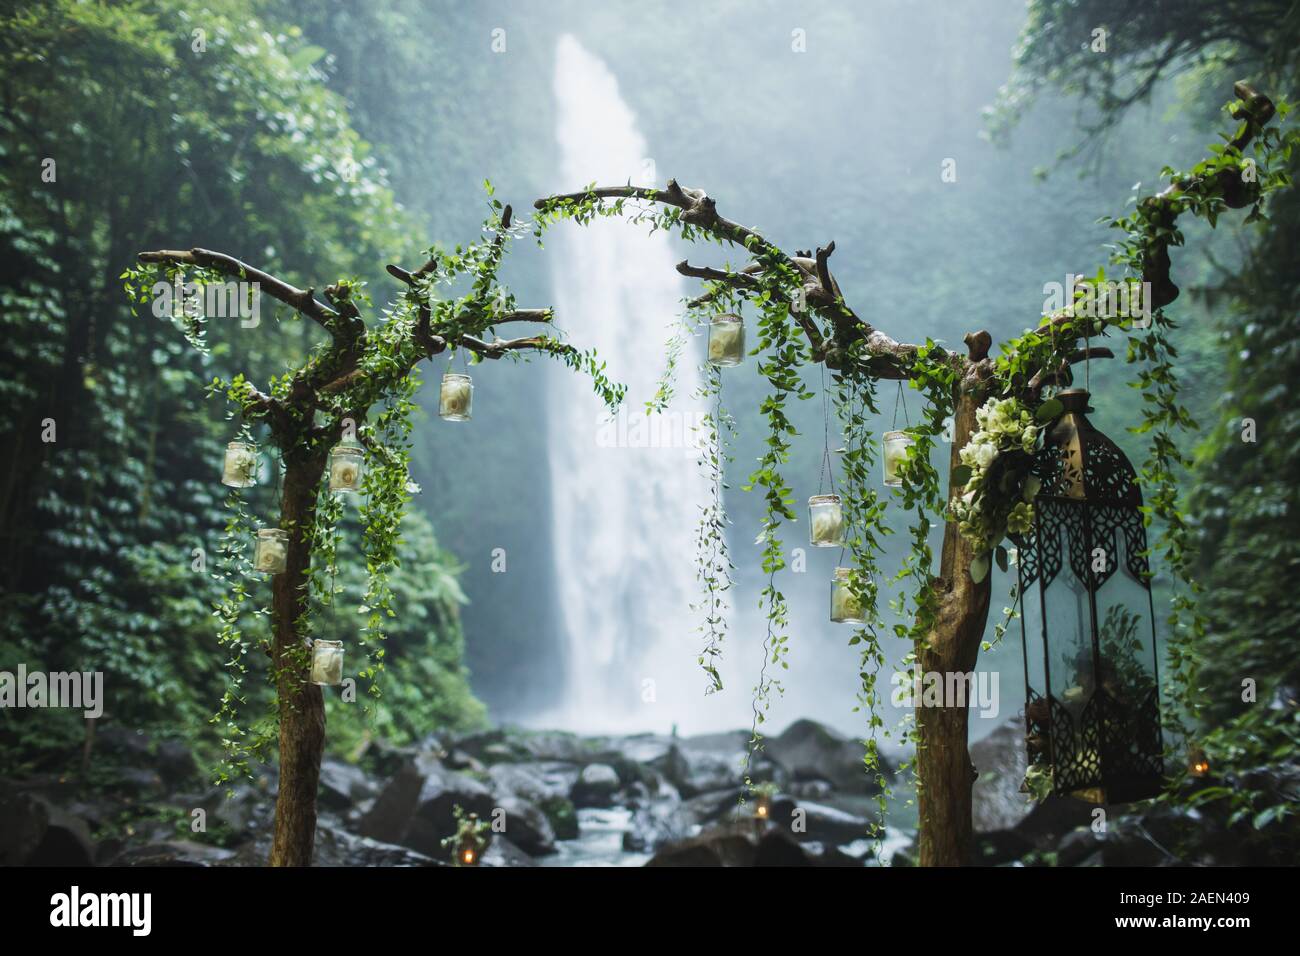 Cerimonia di nozze su enorme cascata Nung Nung in Bali, Indonesia jungle. Arch a secco con rami di legno e verde edera. Destinazione insolita per un matrimonio. Foto Stock